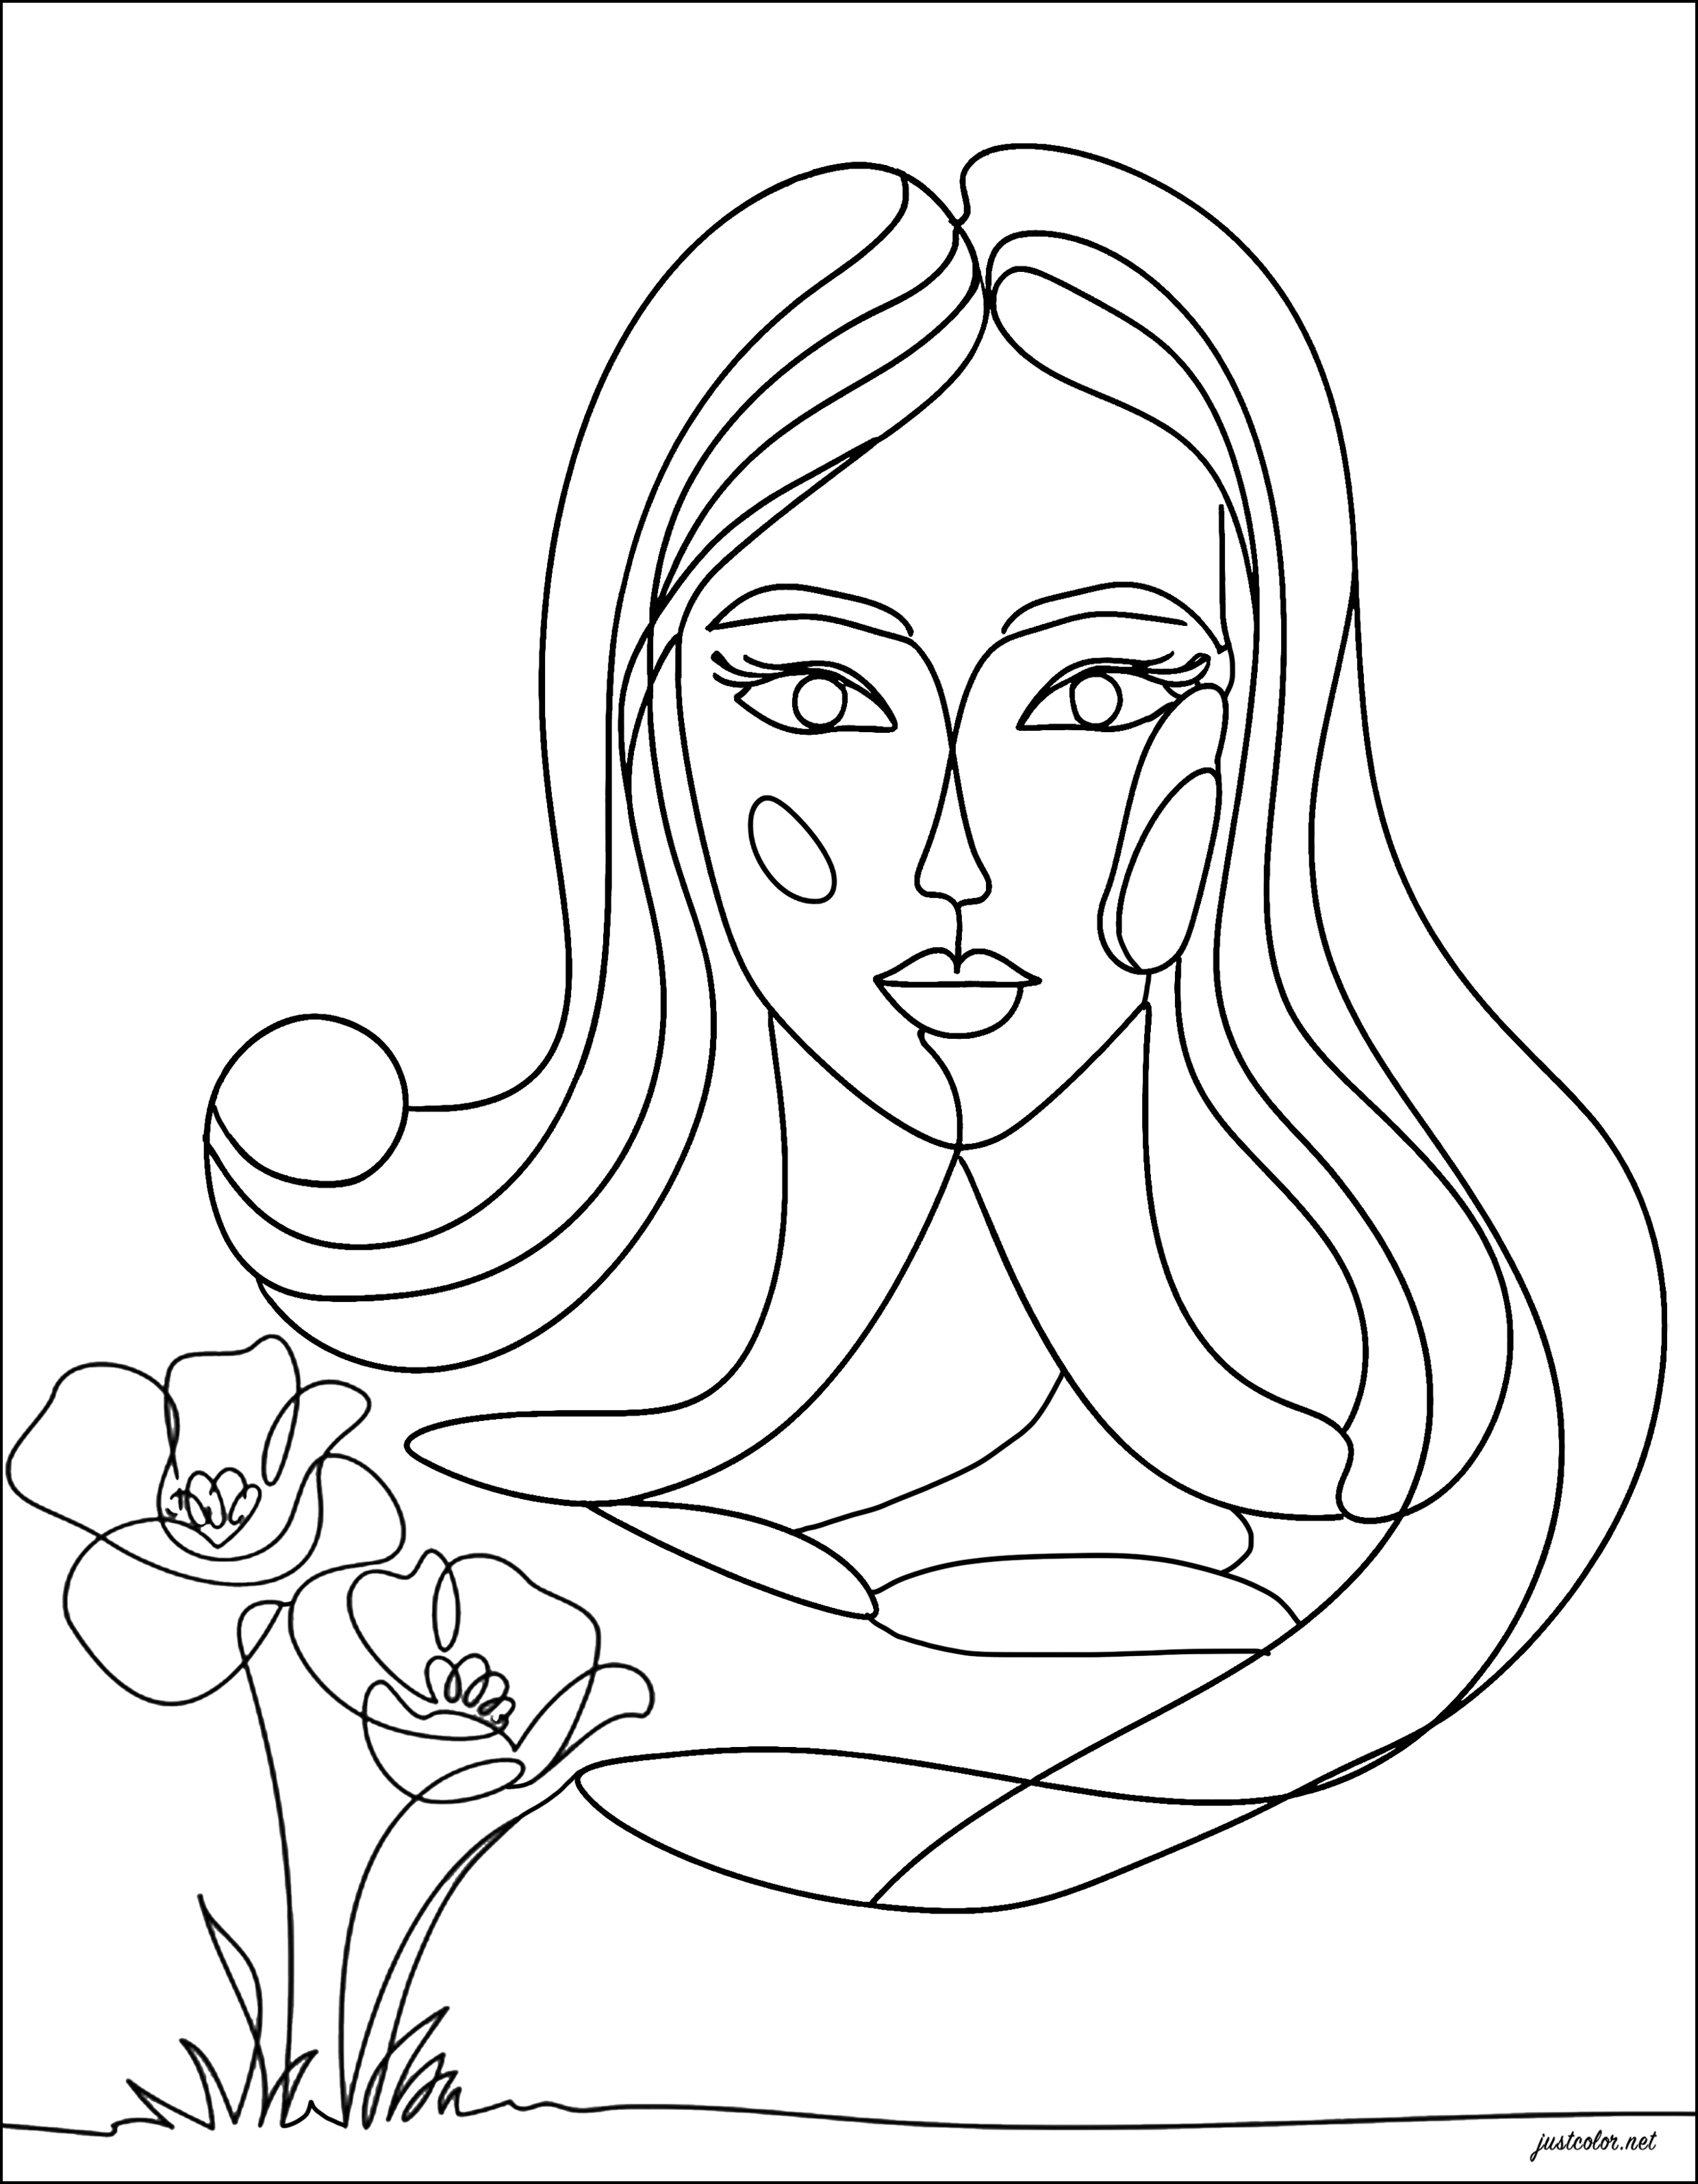 Donna e fiori (Line art). La line art è la tecnica artistica che consiste nel creare immagini utilizzando solo linee, senza aggiungere colori o riempimenti.